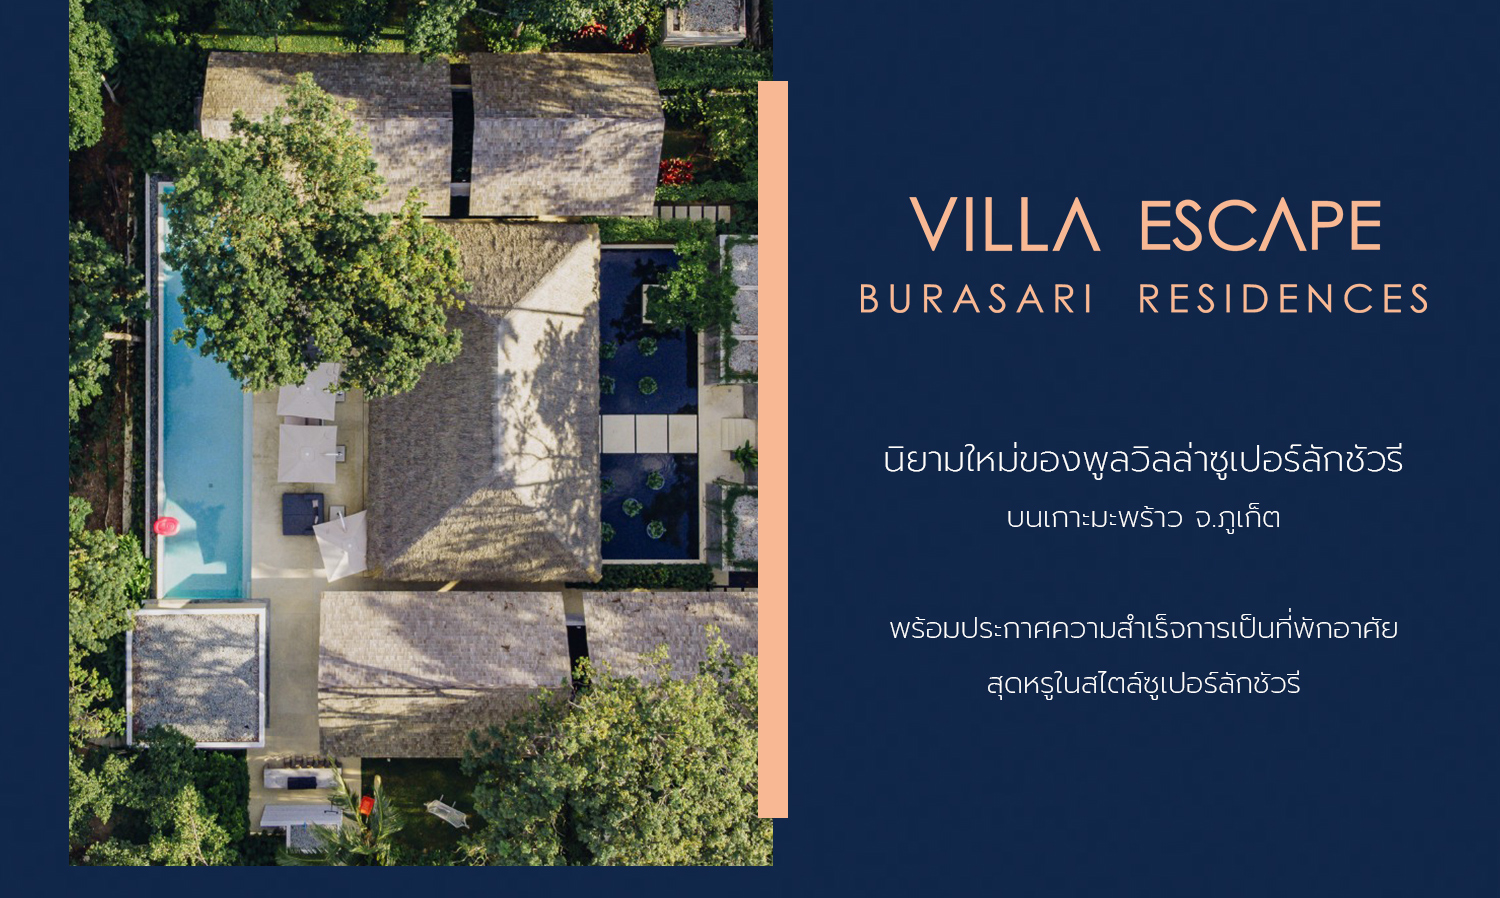 Villa Escape นิยามใหม่ของพูลวิลล่าซูเปอร์ลักชัวรี บนเกาะมะพร้าว จ.ภูเก็ต พร้อมประกาศความสำเร็จการเป็นที่พักอาศัยสุดหรูในสไตล์ซูเปอร์ลักชัวรี